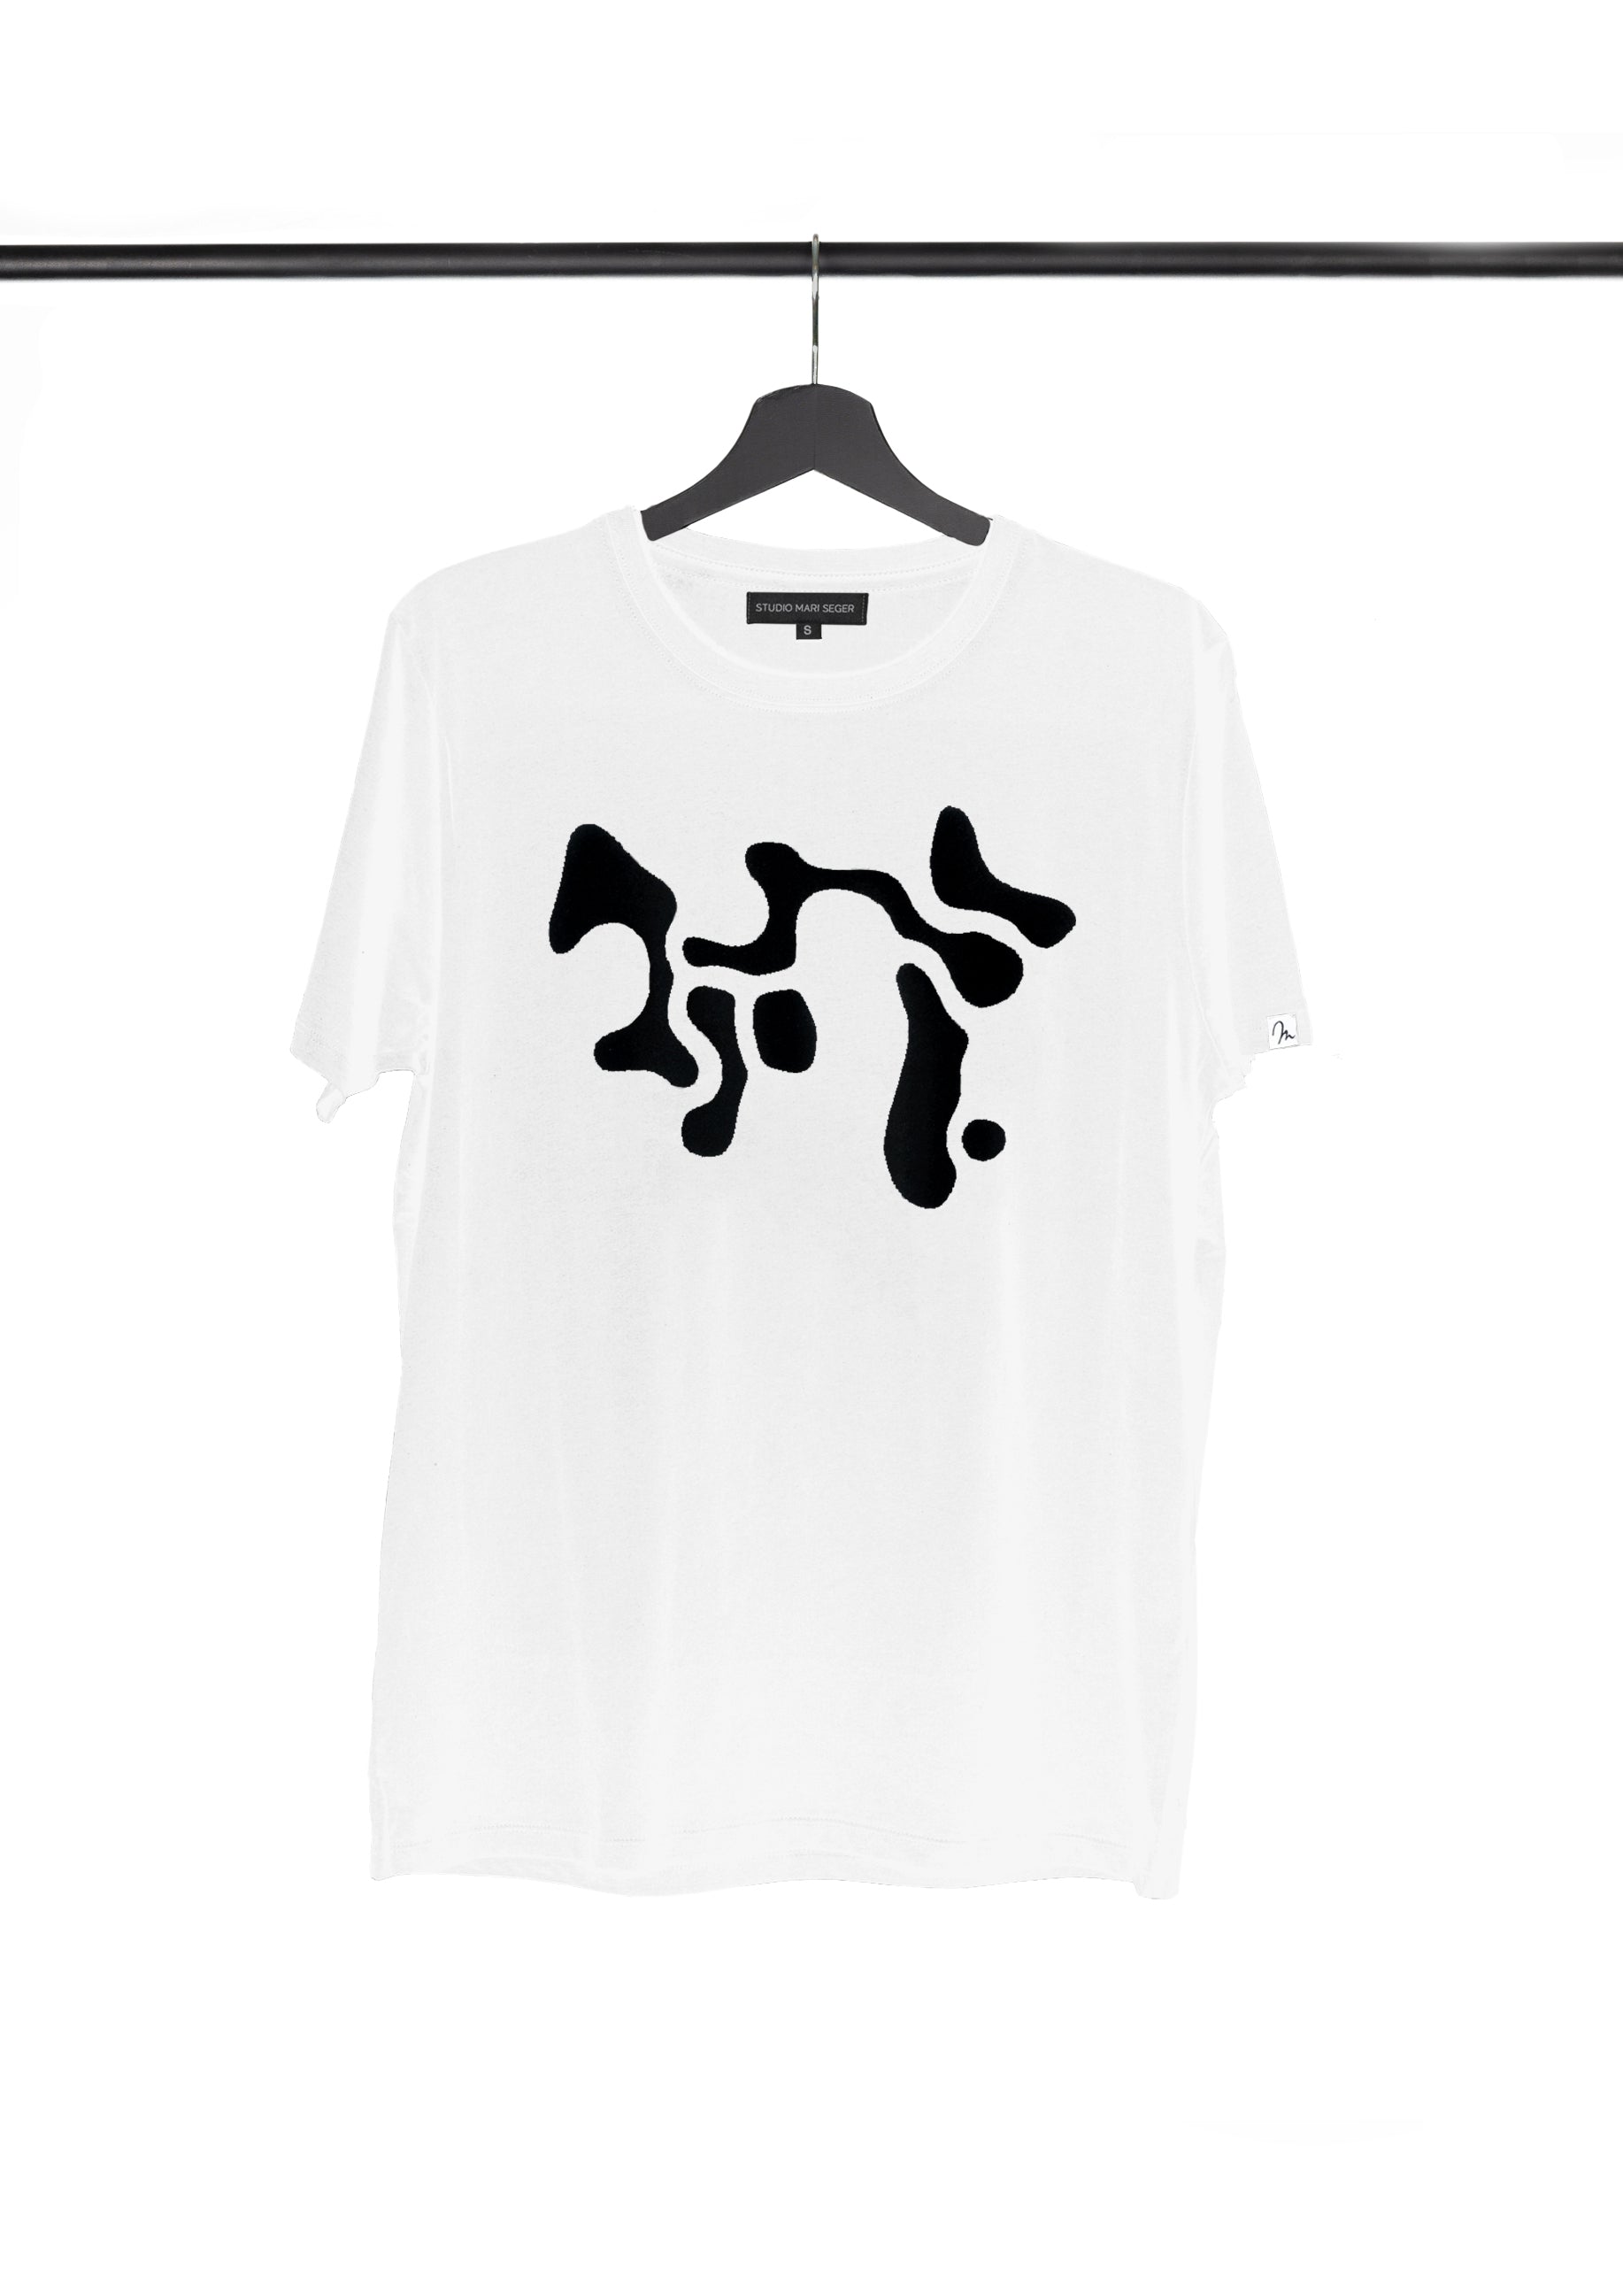 SHADO / t-shirt white